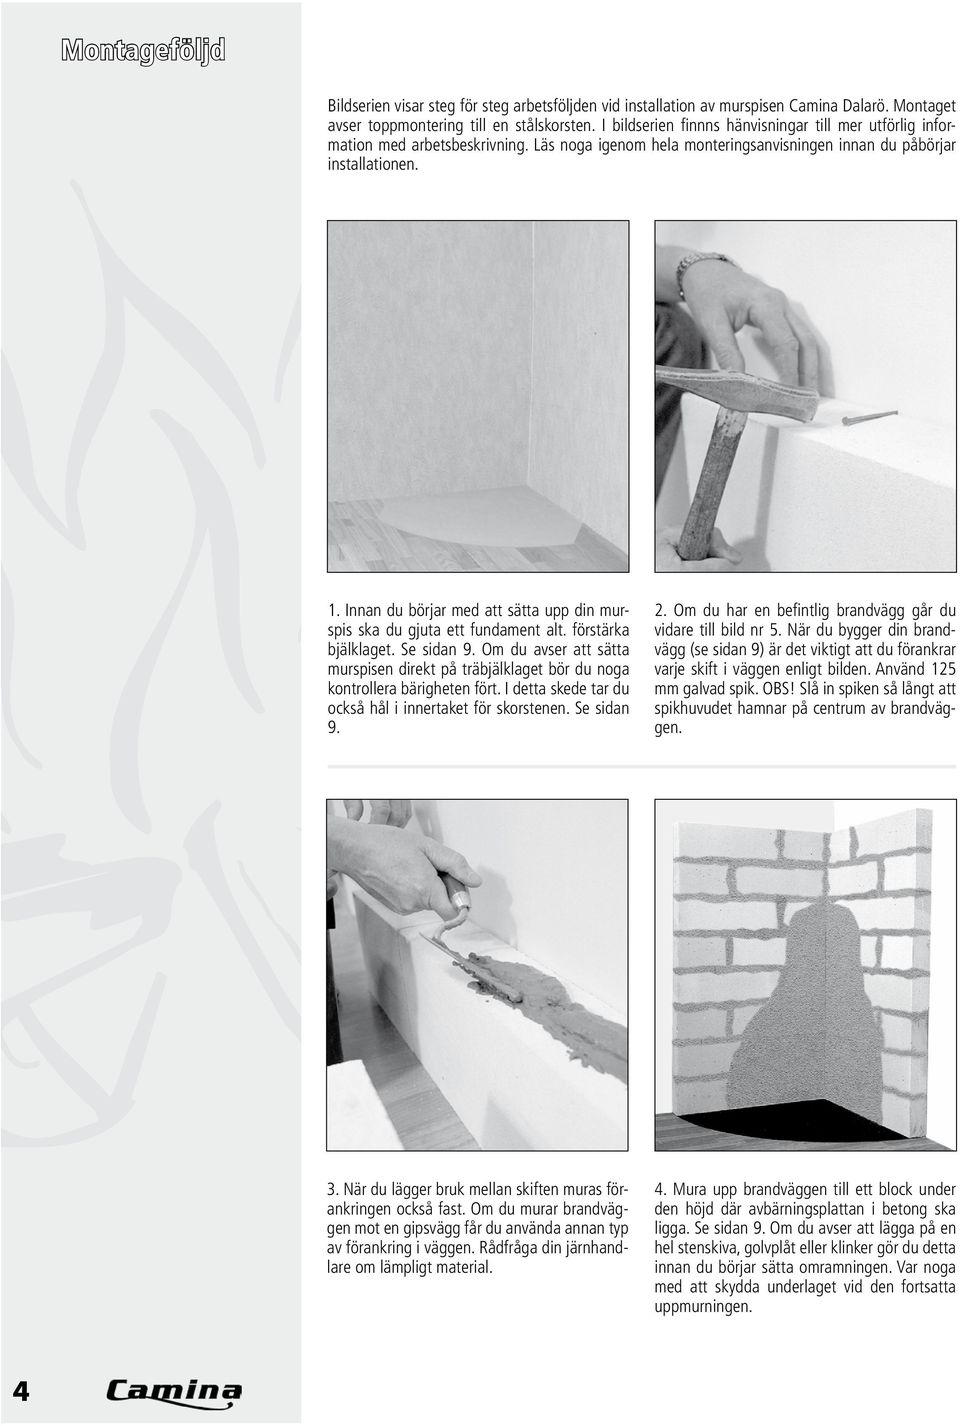 Innan du börjar med att sätta upp din murspis ska du gjuta ett fundament alt. förstärka bjälklaget. Se sidan 9.